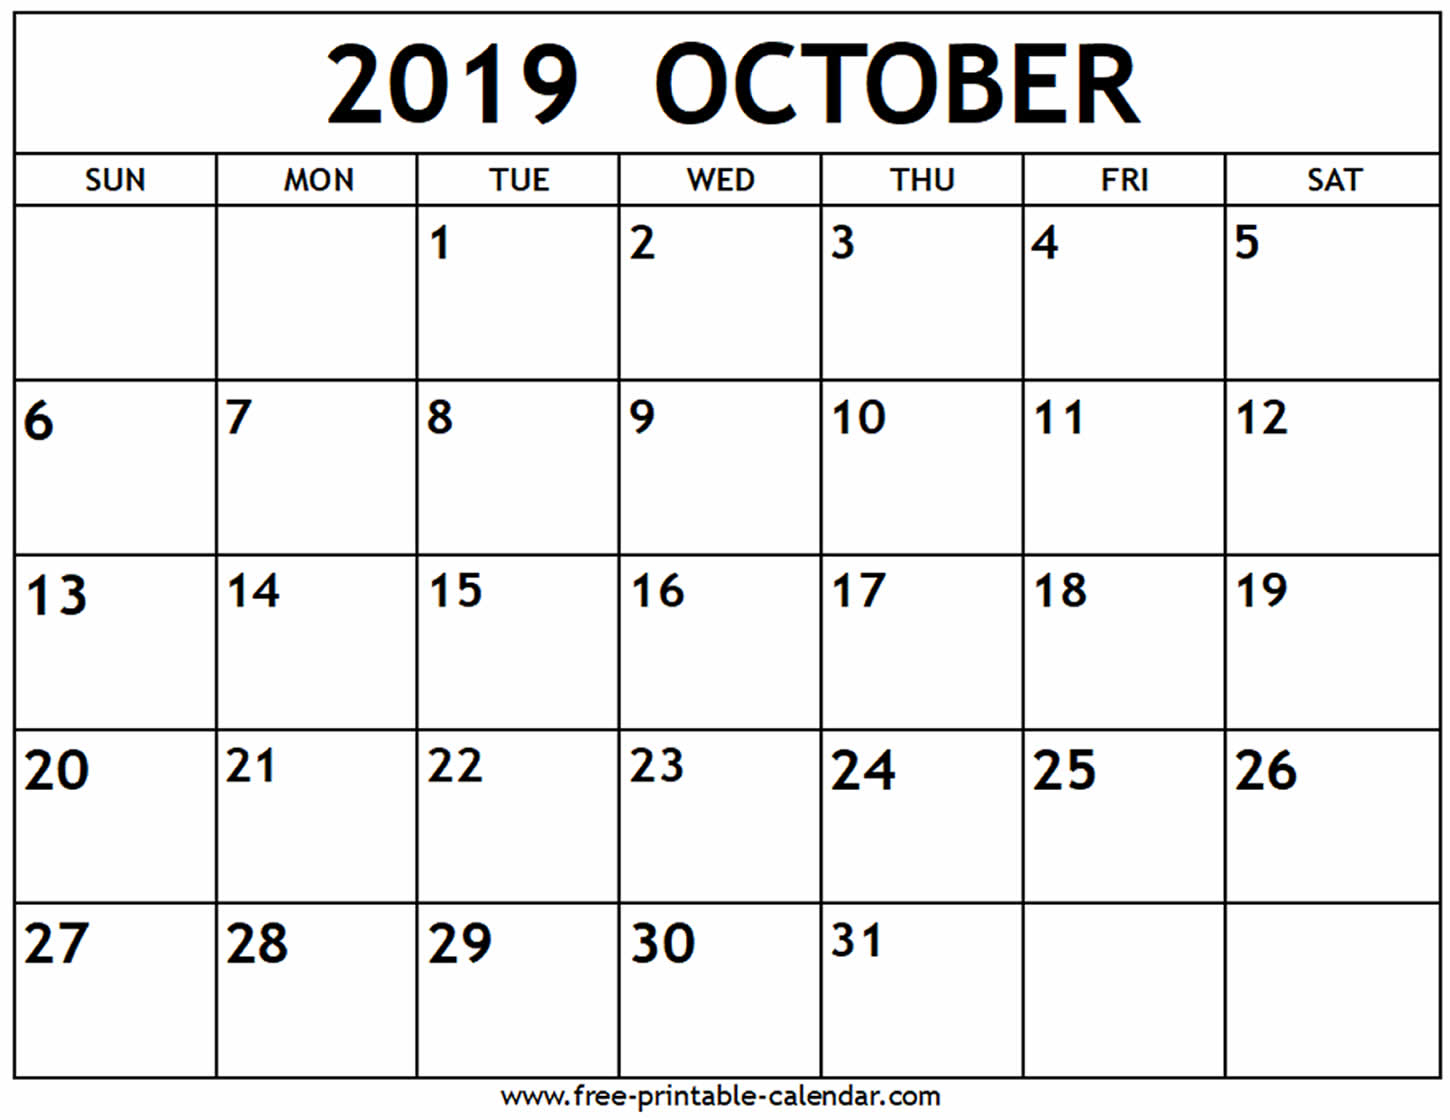 October 2019 Calendar - Free-Printable-Calendar